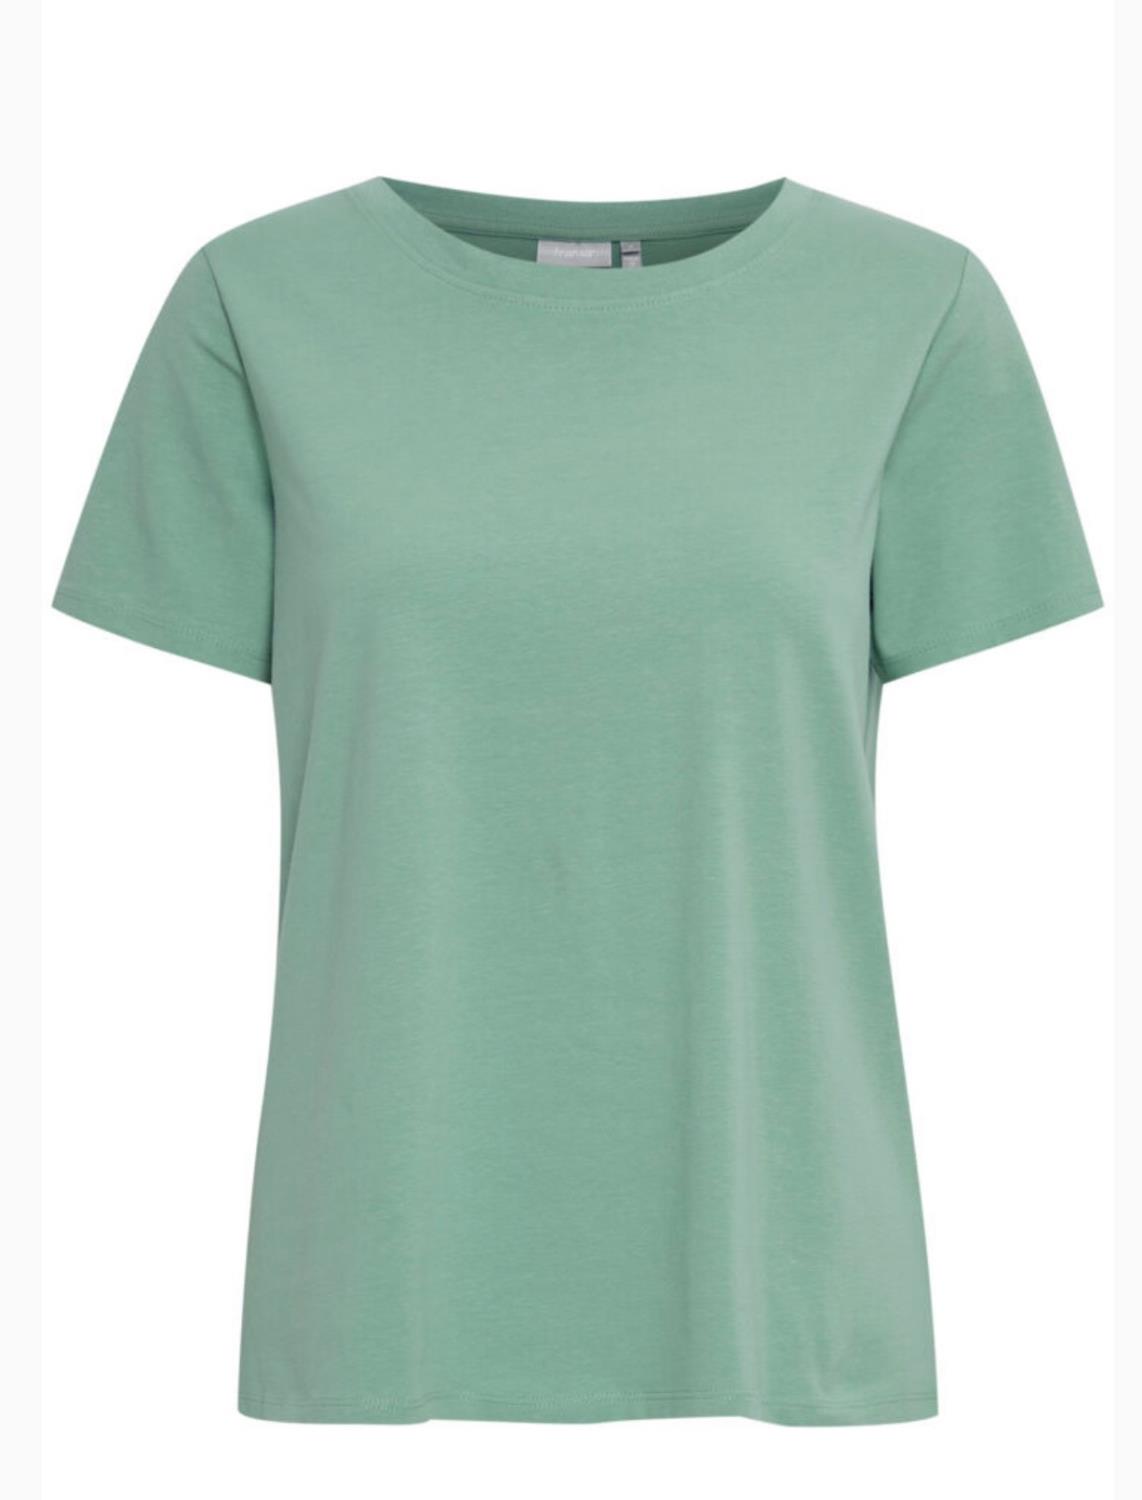 Zashoulder 1 T-shirt - Malachite Green